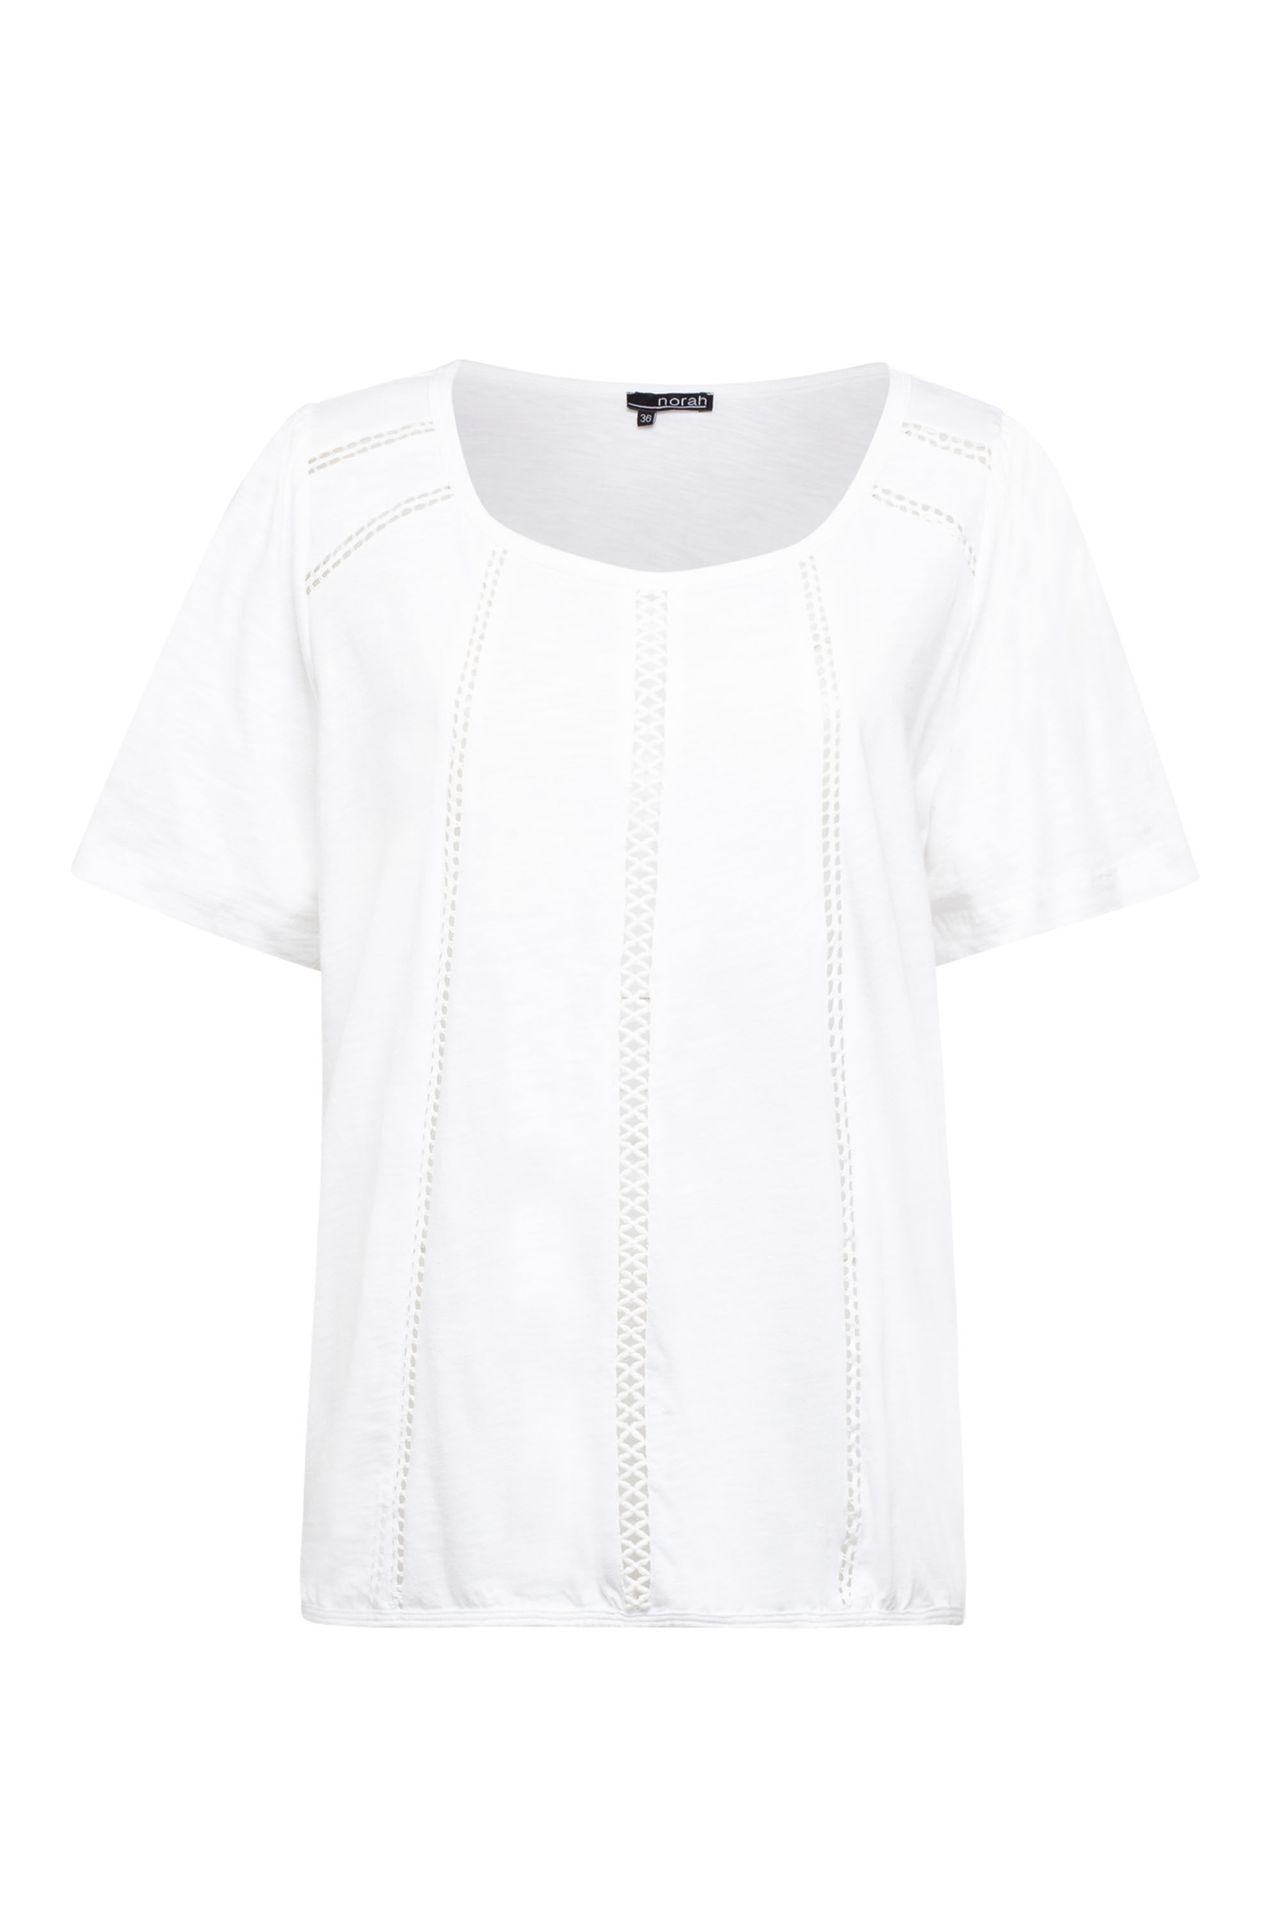 Norah Shirt wit  white 212795-100